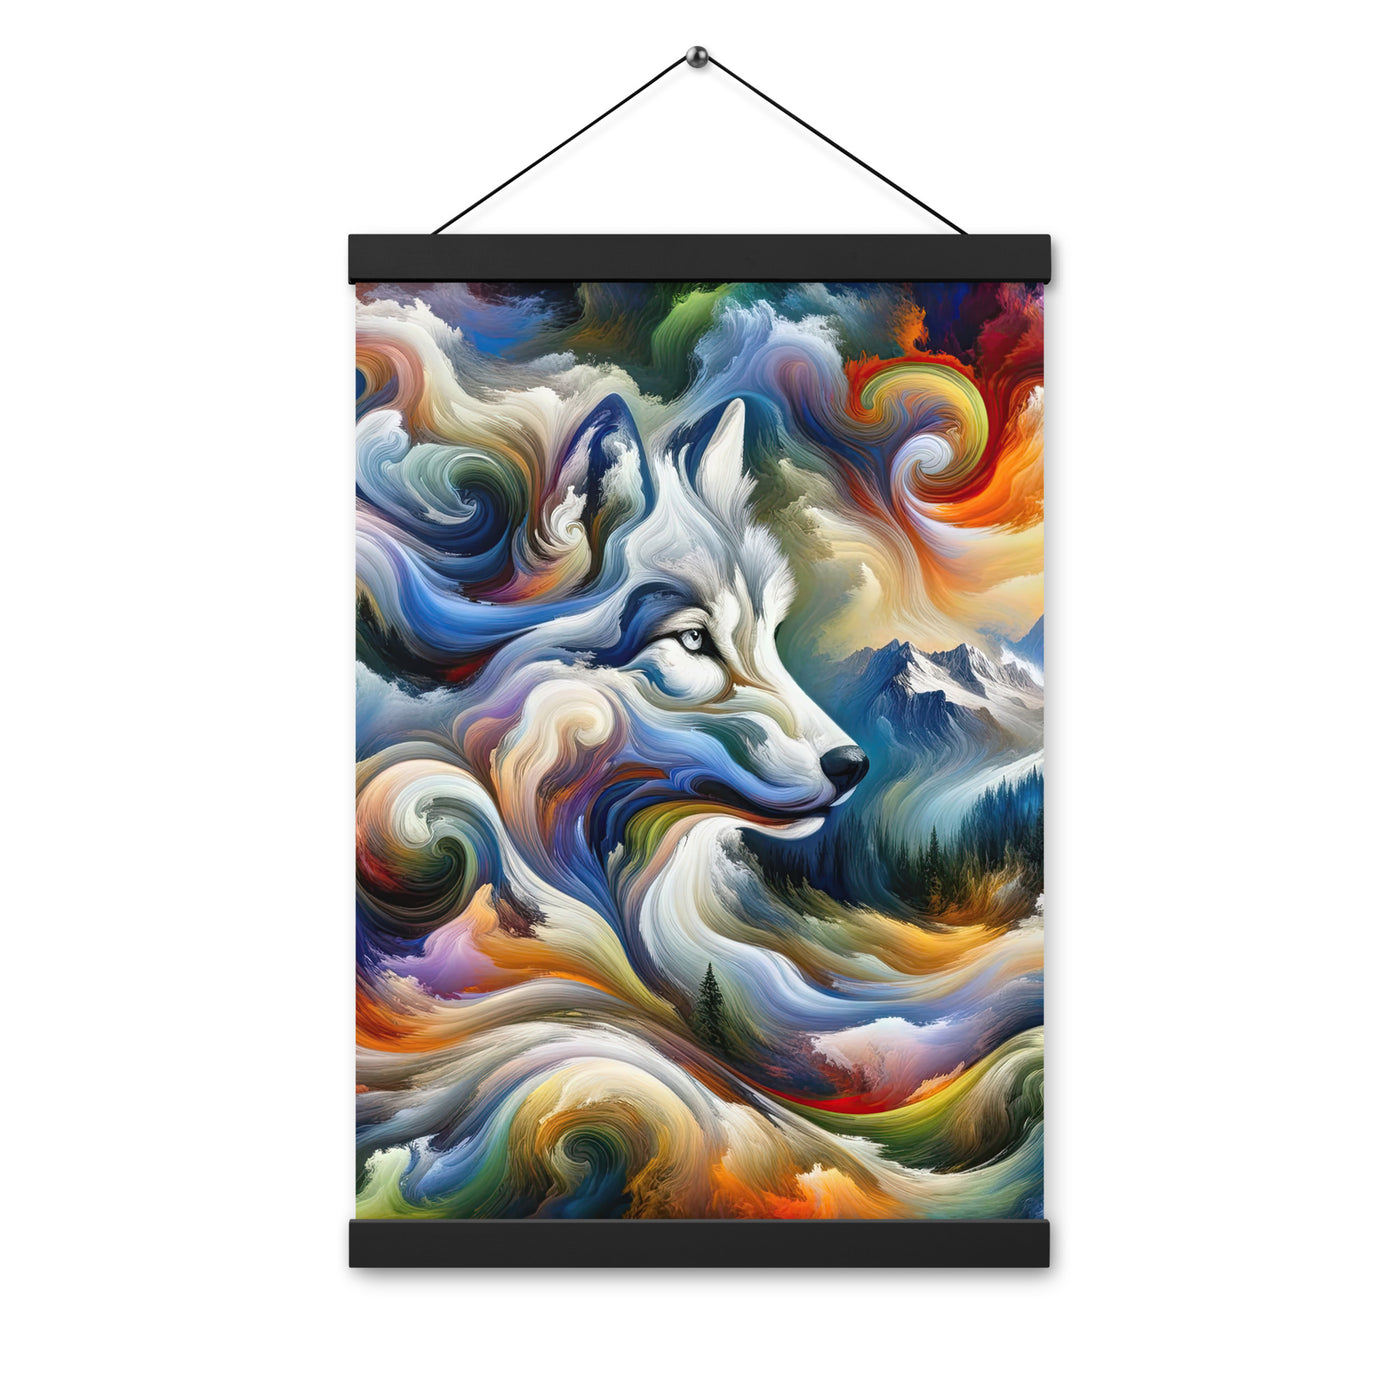 Abstraktes Alpen Gemälde: Wirbelnde Farben und Majestätischer Wolf, Silhouette (AN) - Premium Poster mit Aufhängung xxx yyy zzz 30.5 x 45.7 cm